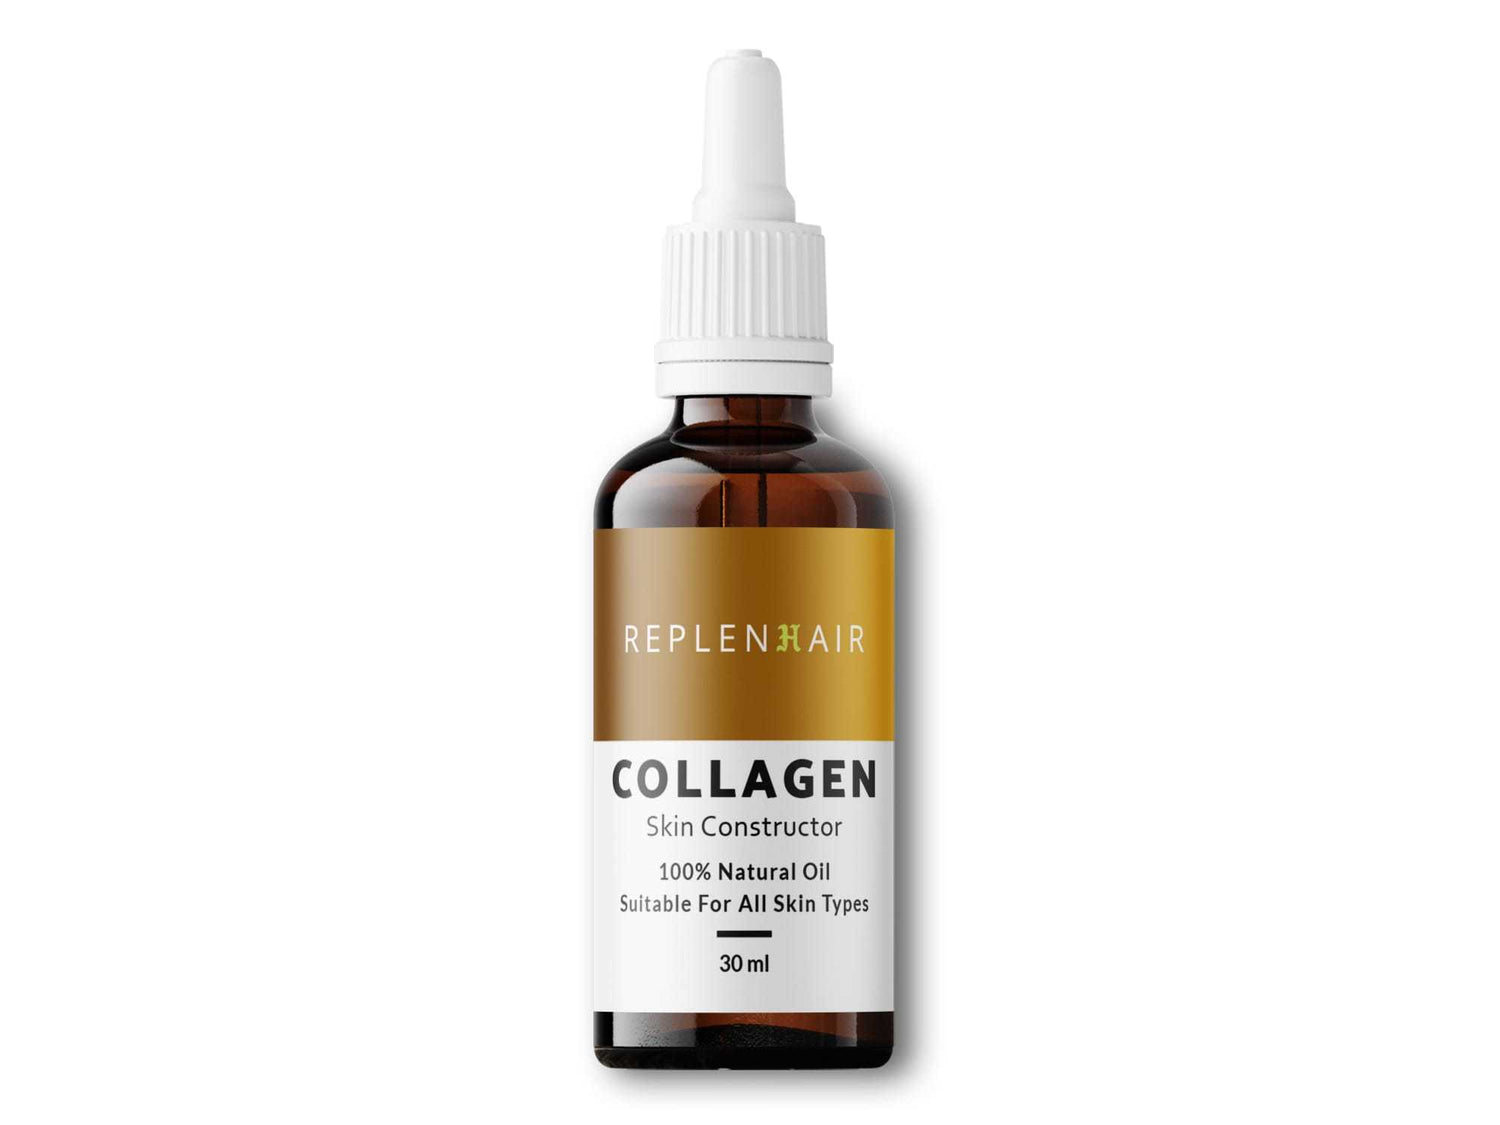 Collagen Oil